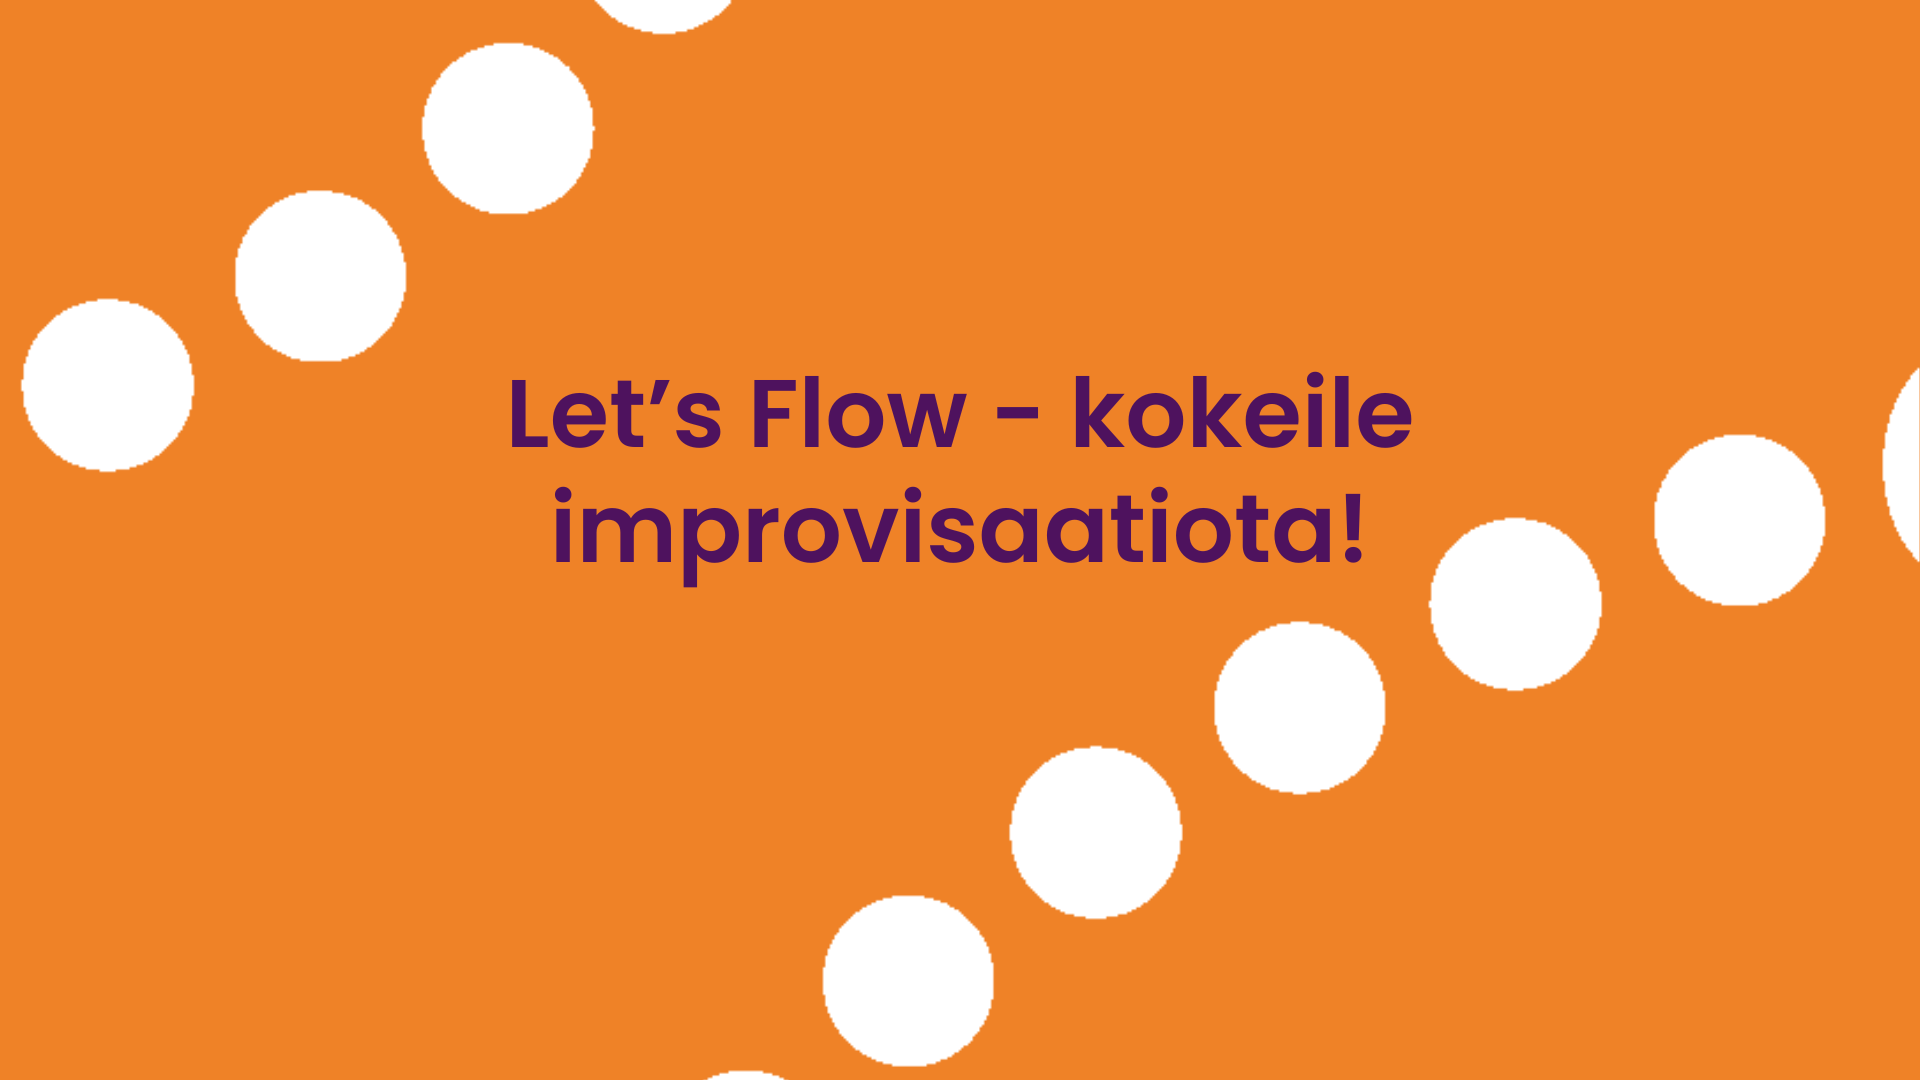 Let's flow - kokeile improvisaatiota!